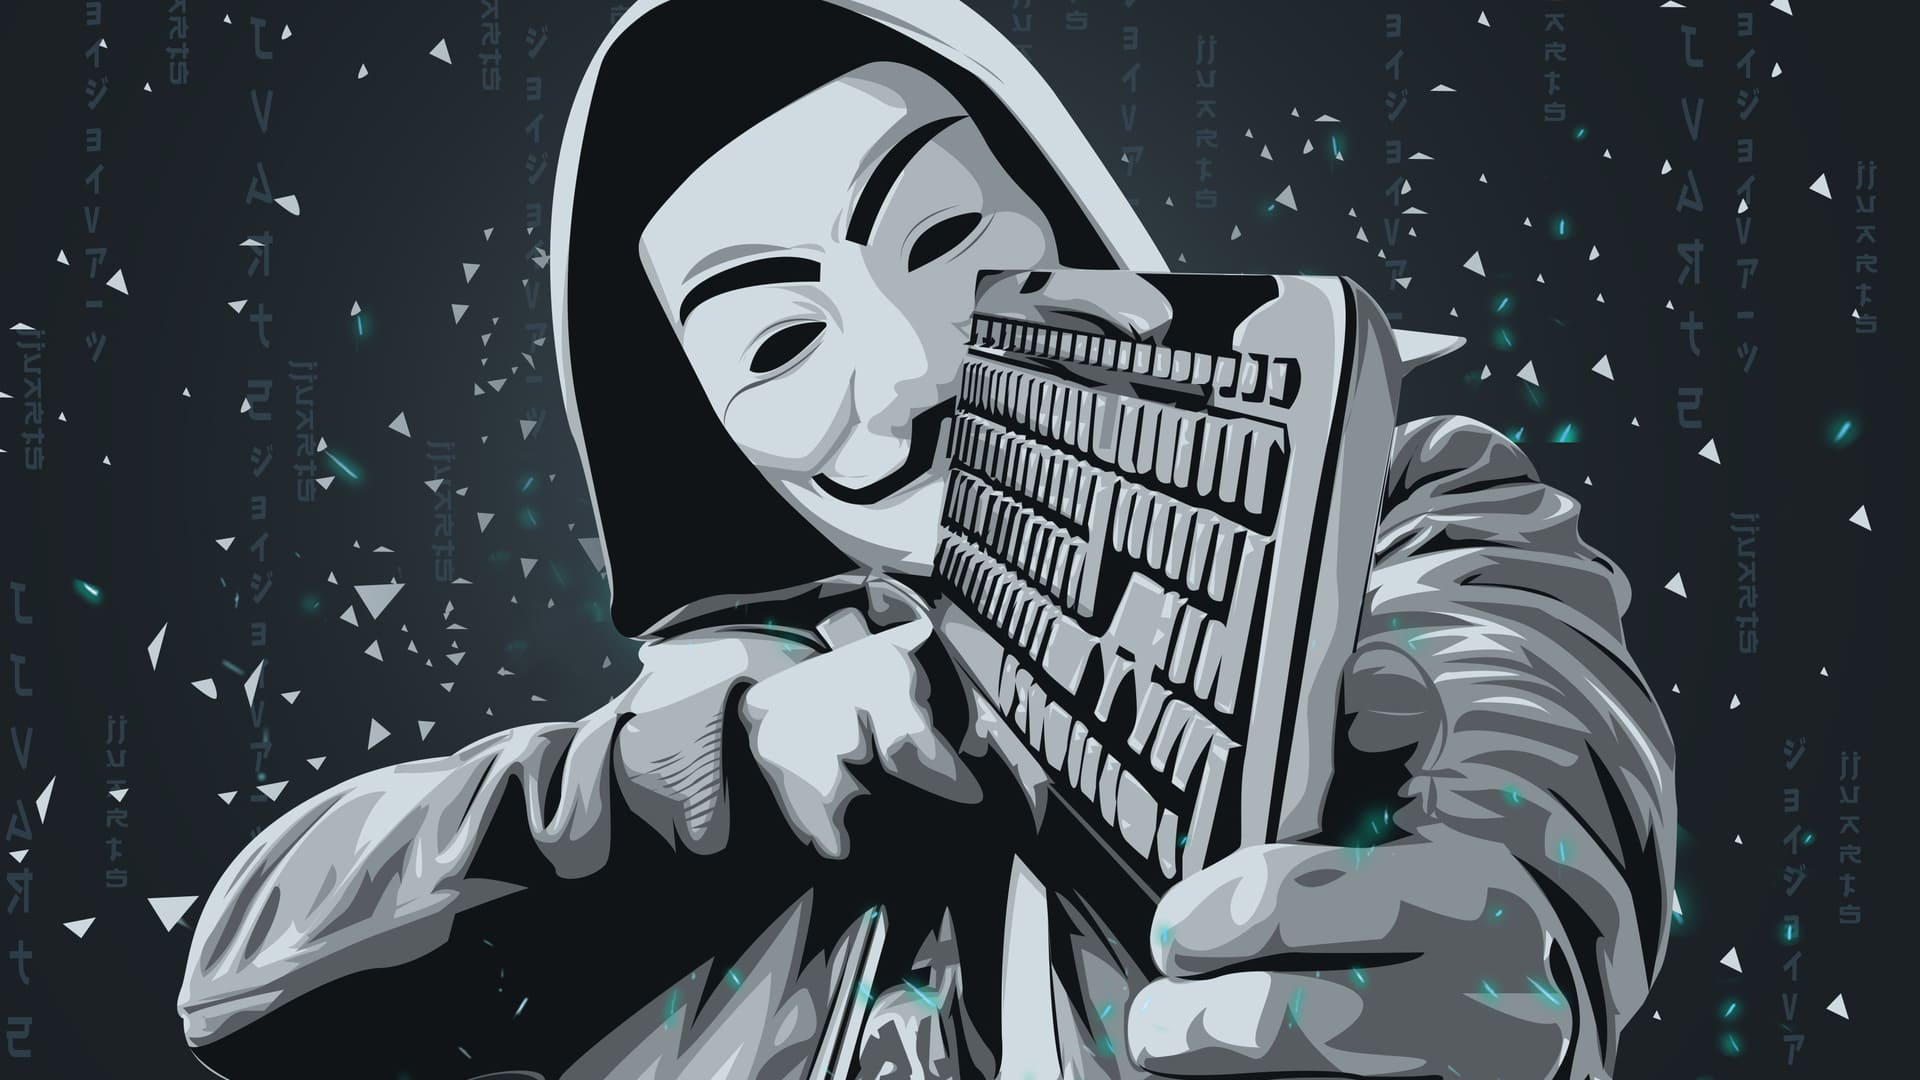 Guerra in rete: Anonymous contro Killnet. Pubblicati i dati personali degli hacker filorussi - Open